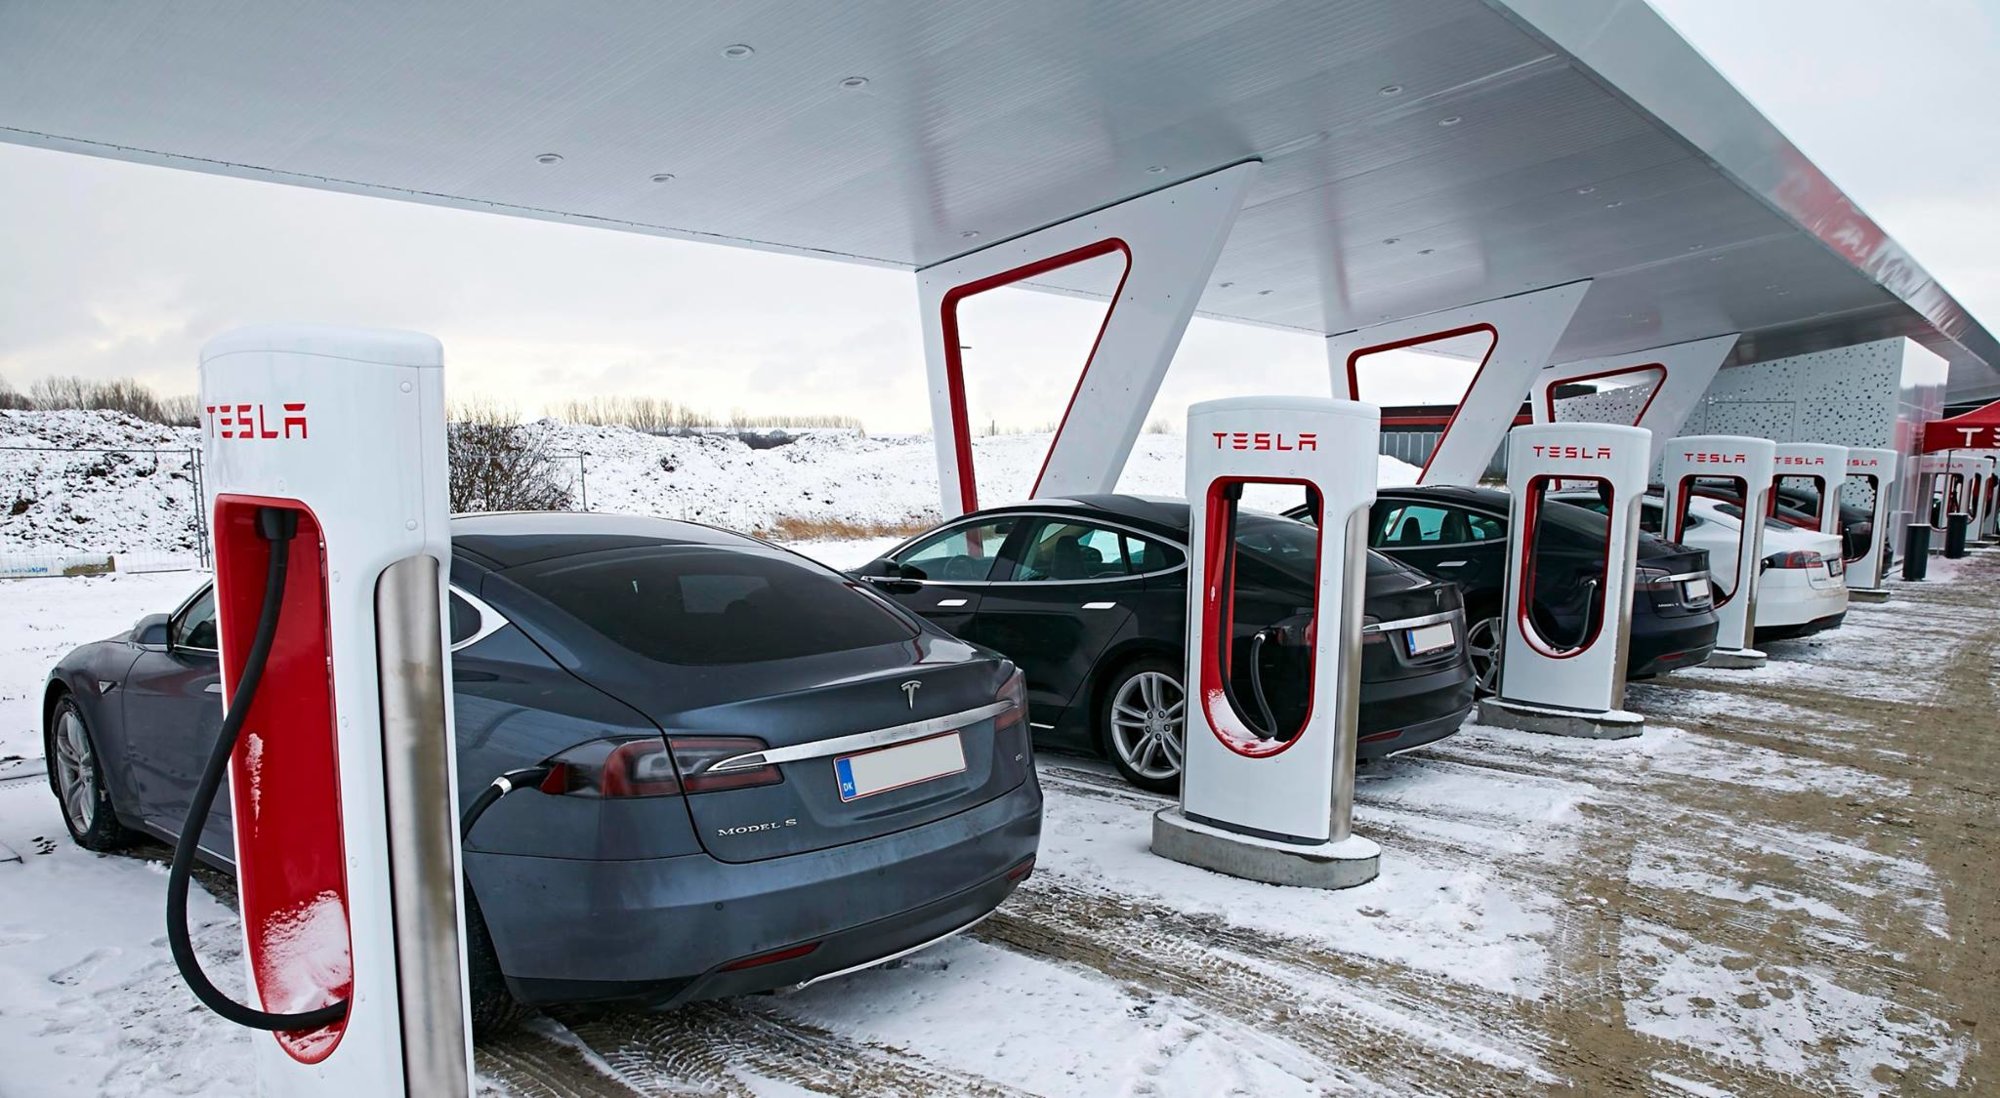 Tesla-Supercharging-Station.jpg